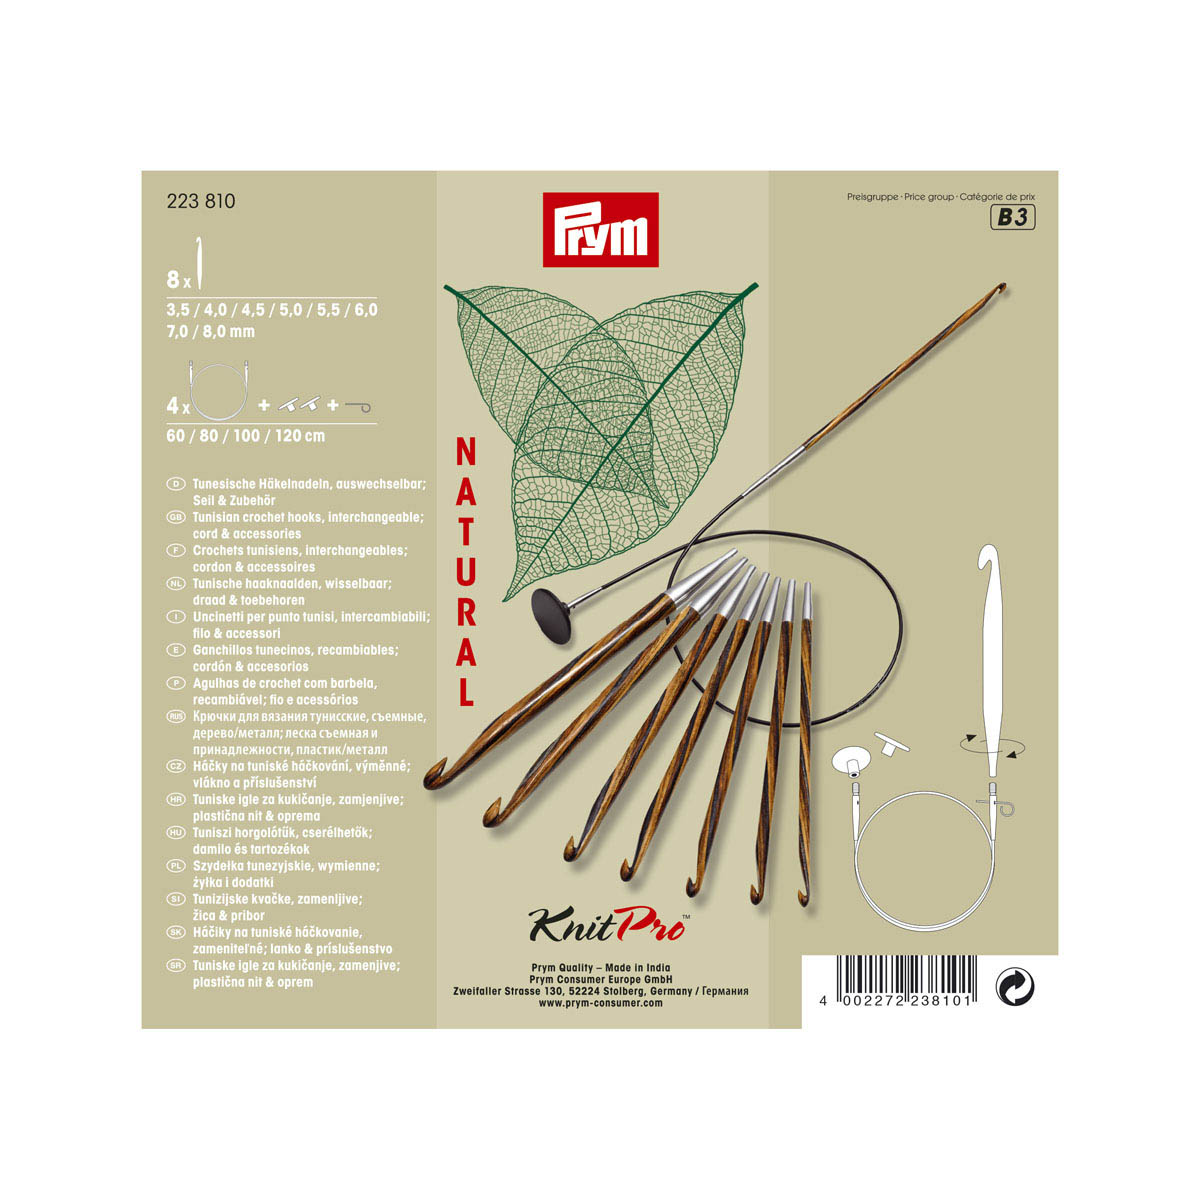 223810 Крючки для вязания тунисские, дерево/металл (набор), 3,5-8 мм, упак./8 шт., Prym